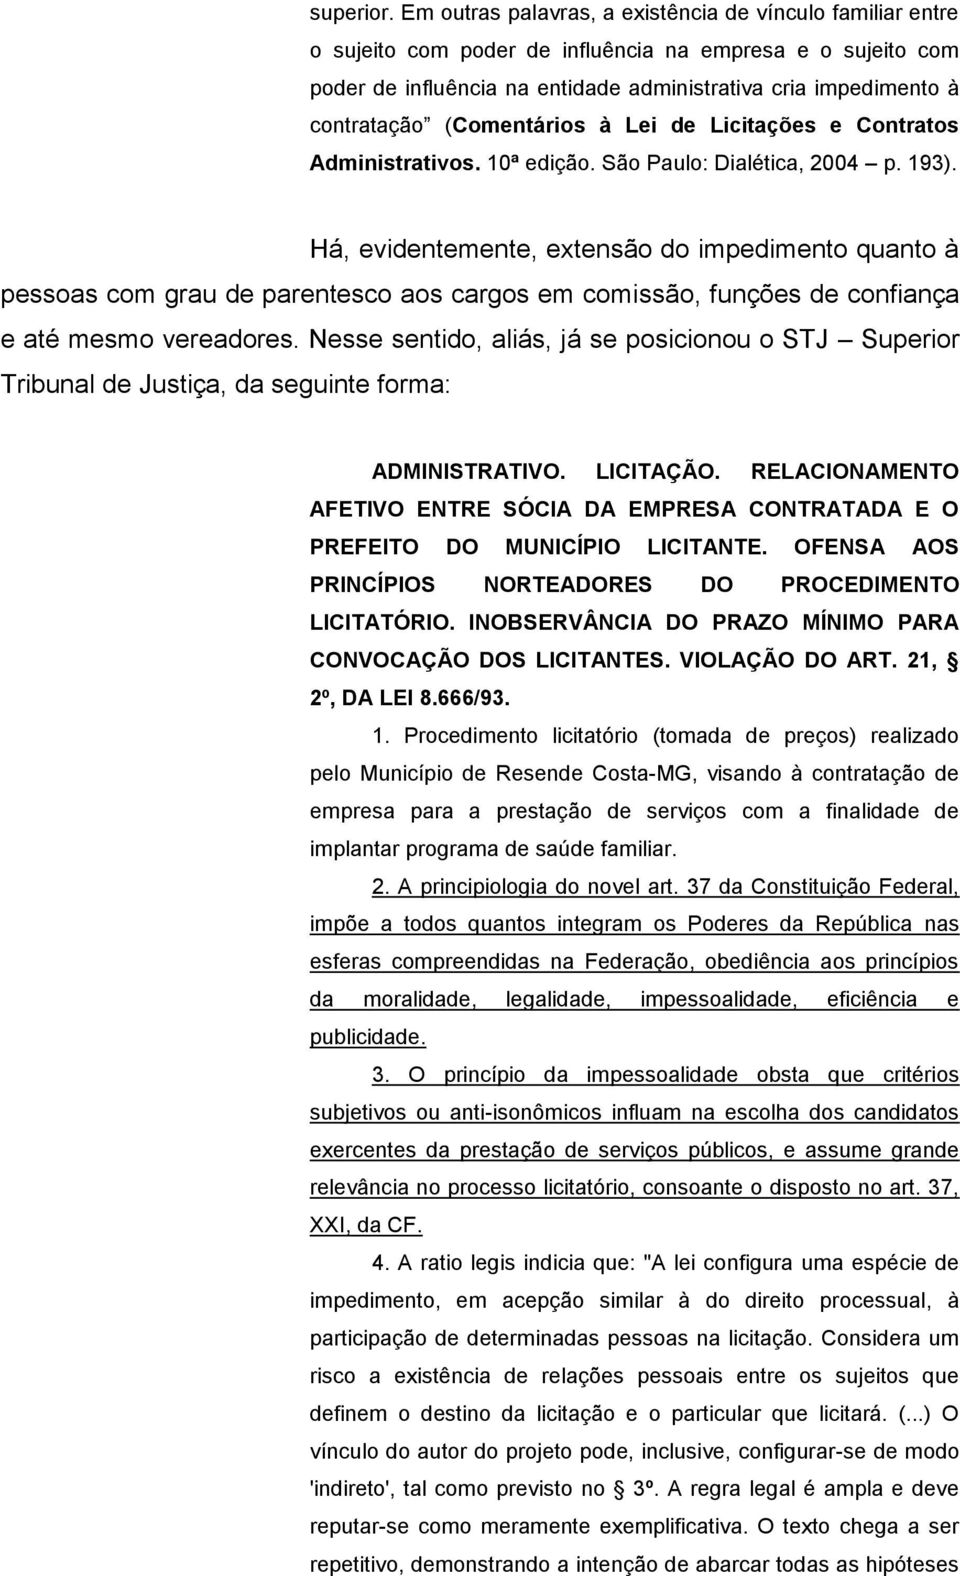 (Comentários à Lei de Licitações e Contratos Administrativos. 10ª edição. São Paulo: Dialética, 2004 p. 193).